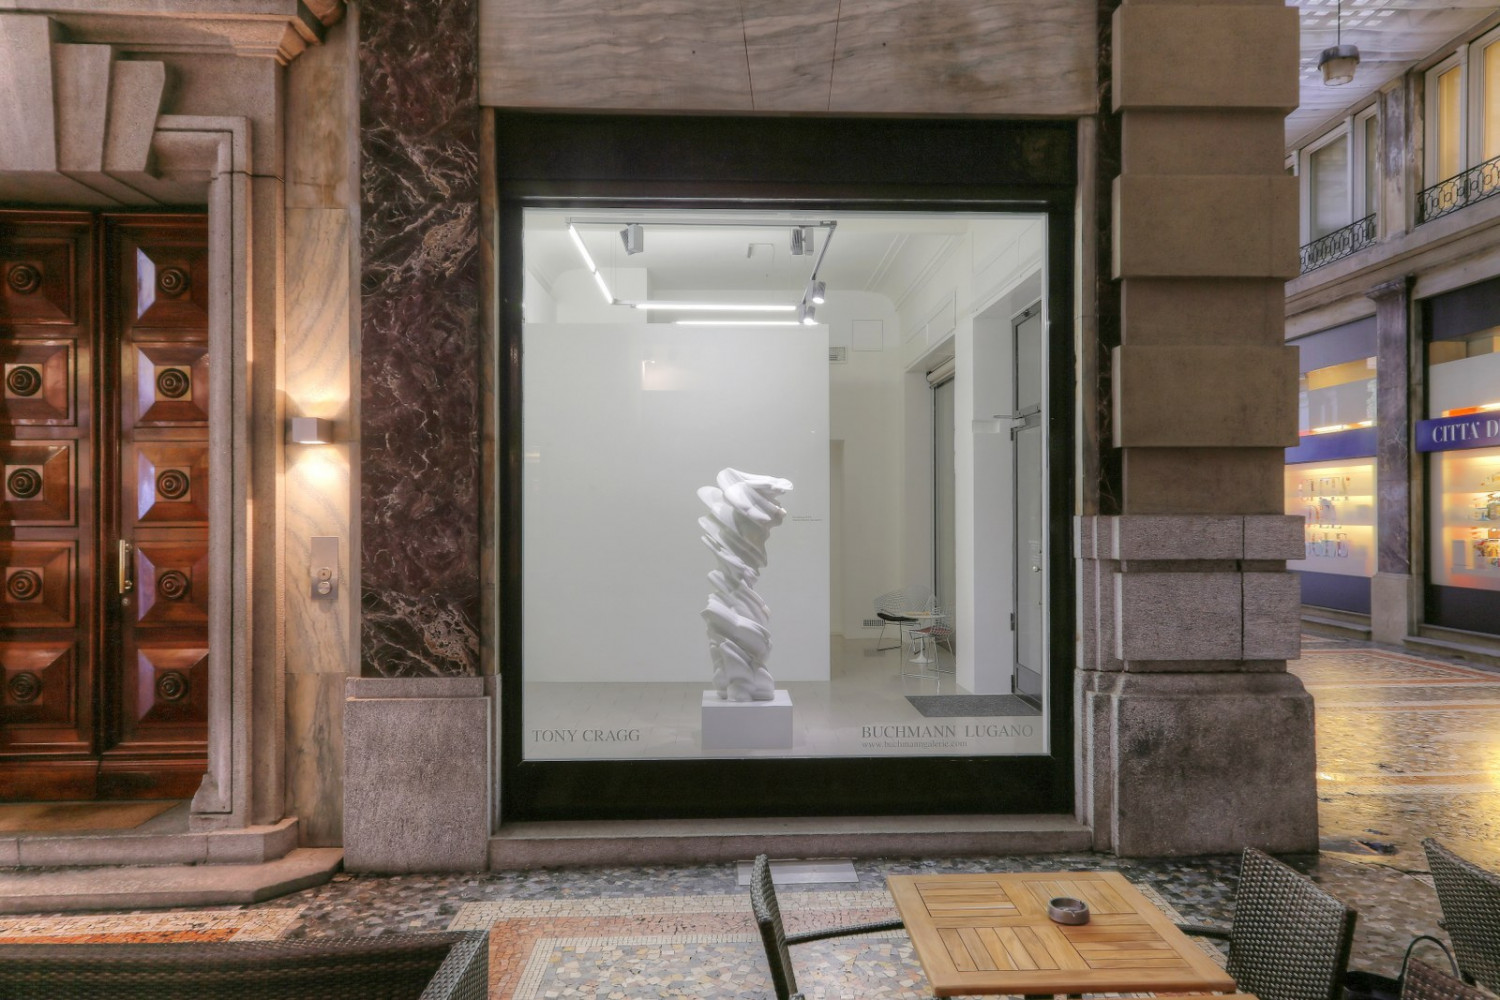 Tony Cragg, ‘Sculture’, Installation view, Buchmann Lugano, 2015